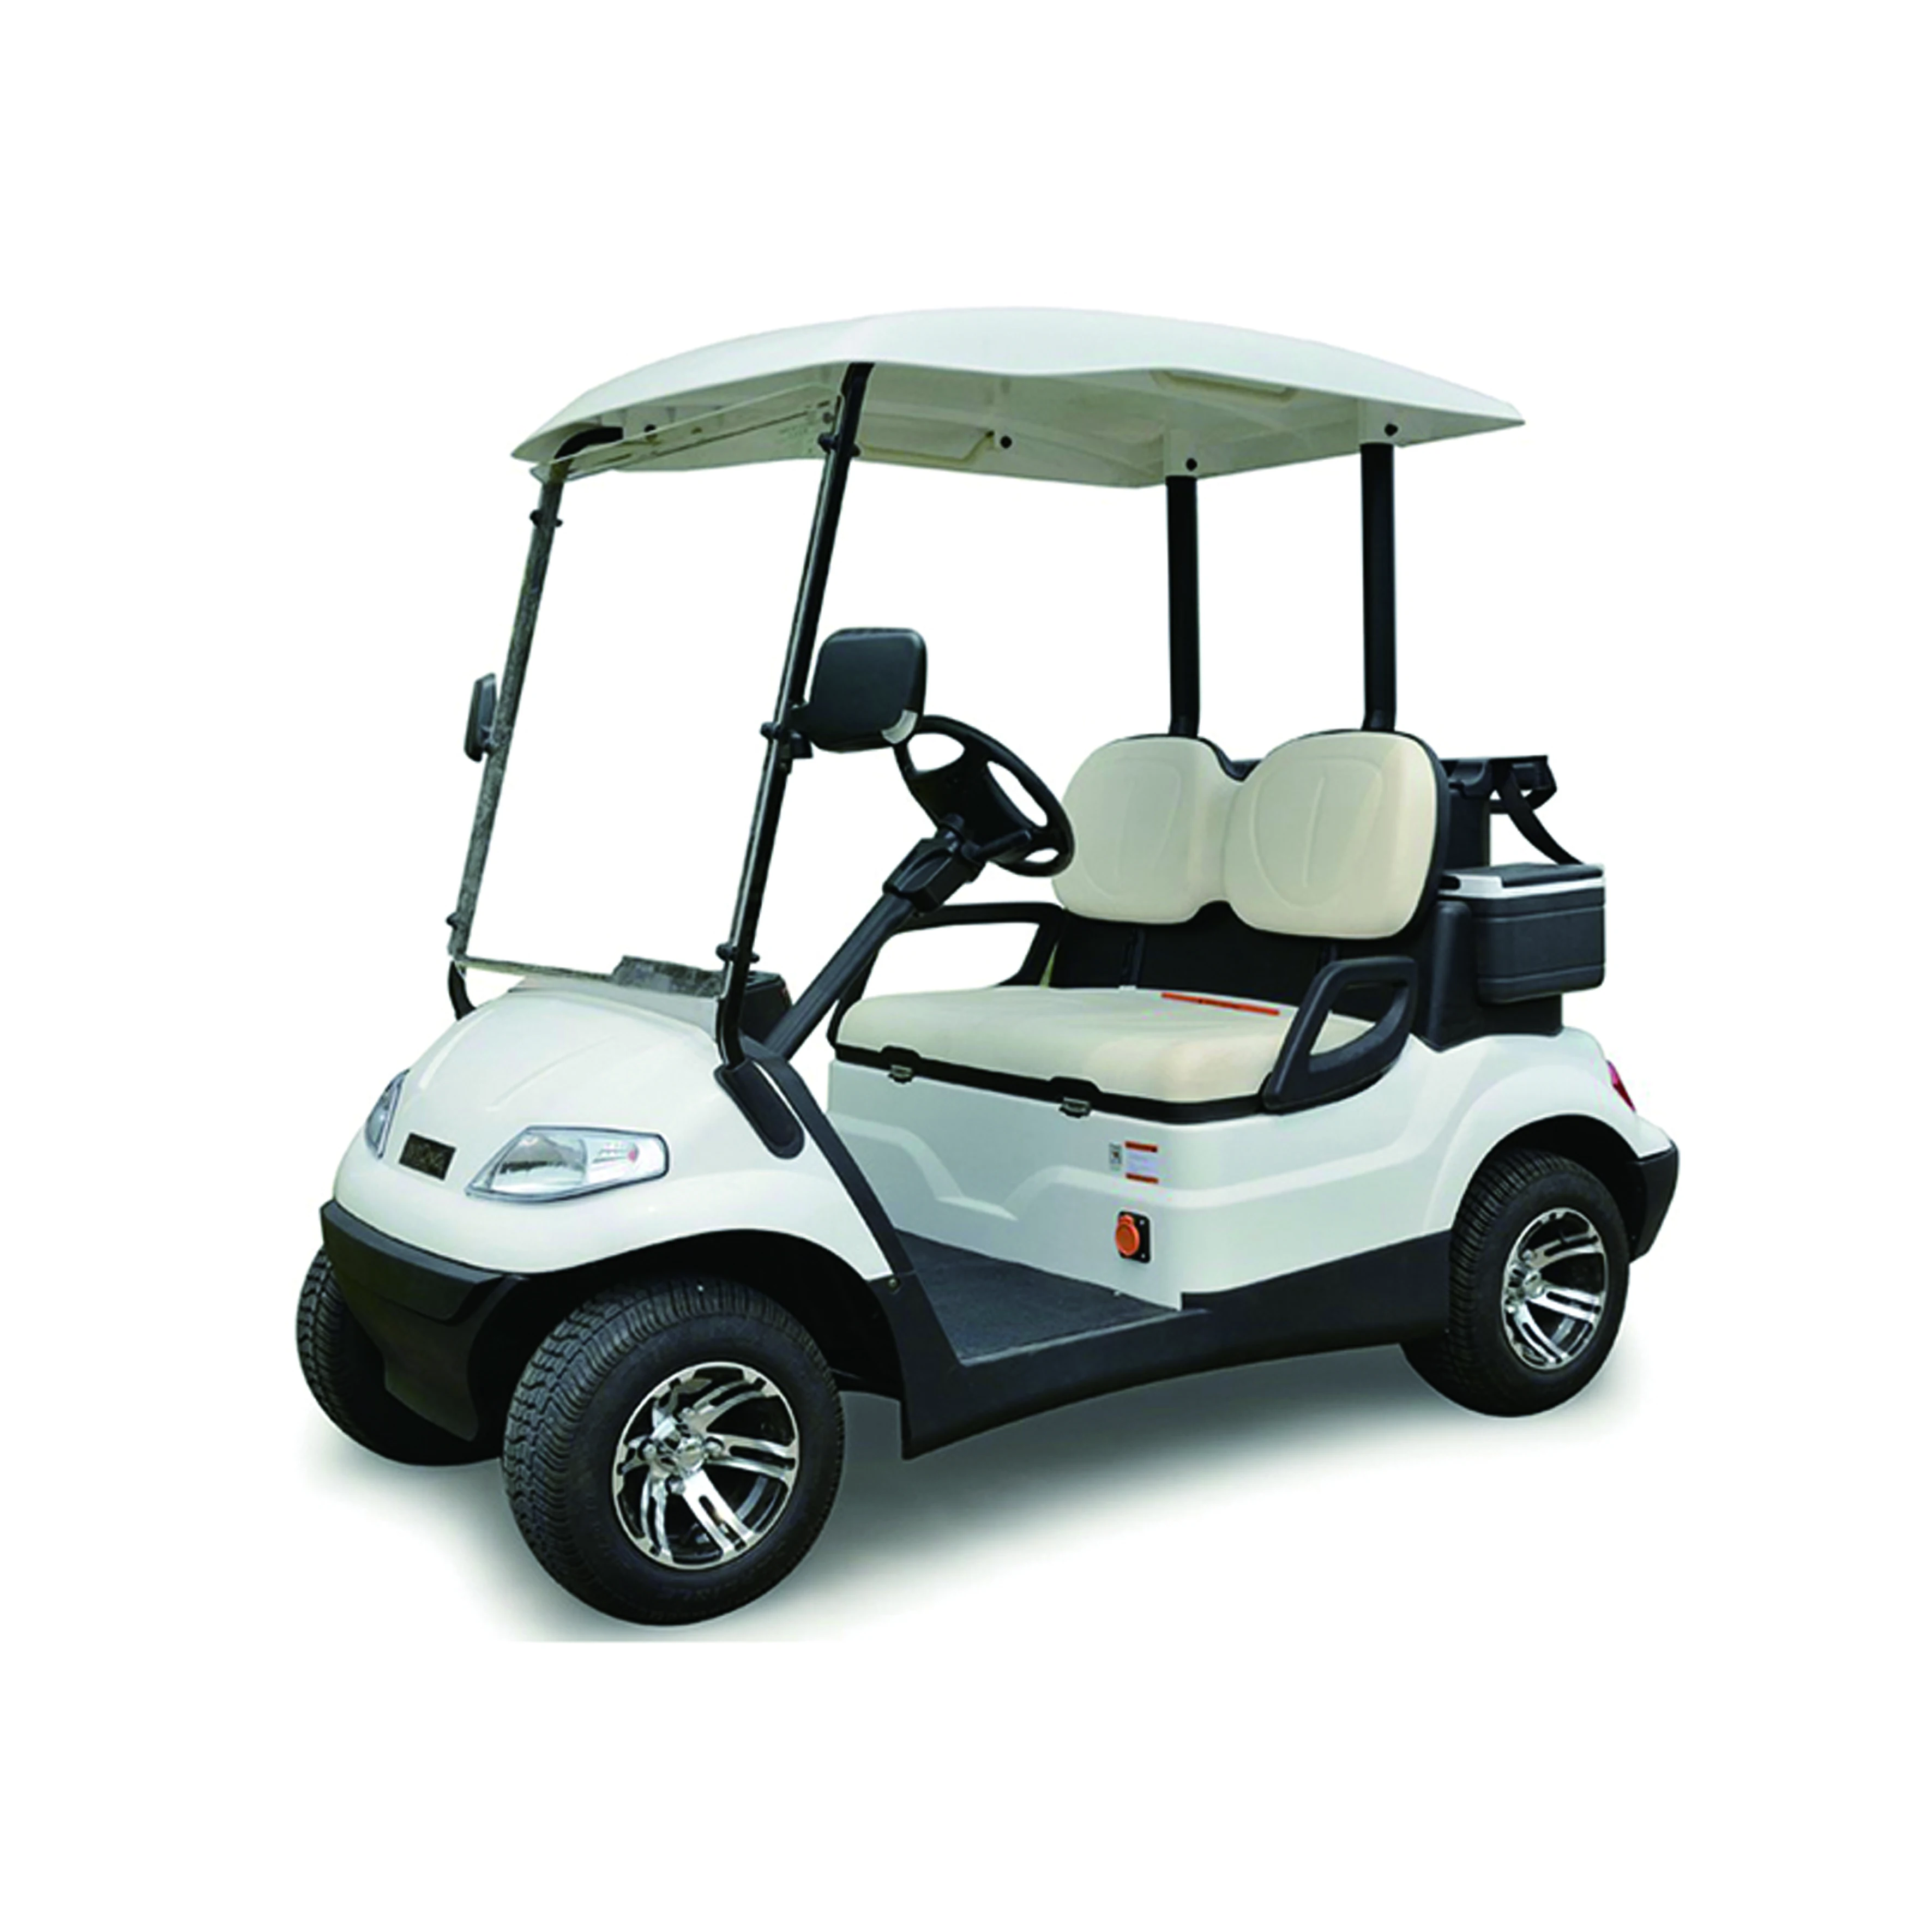 Двухместные электромобили купить. Гольфкар Lvtong lt a627.2+2. Гольфкар Gem model e6. Electric Golf Cart. Lvtong Golf Cart.